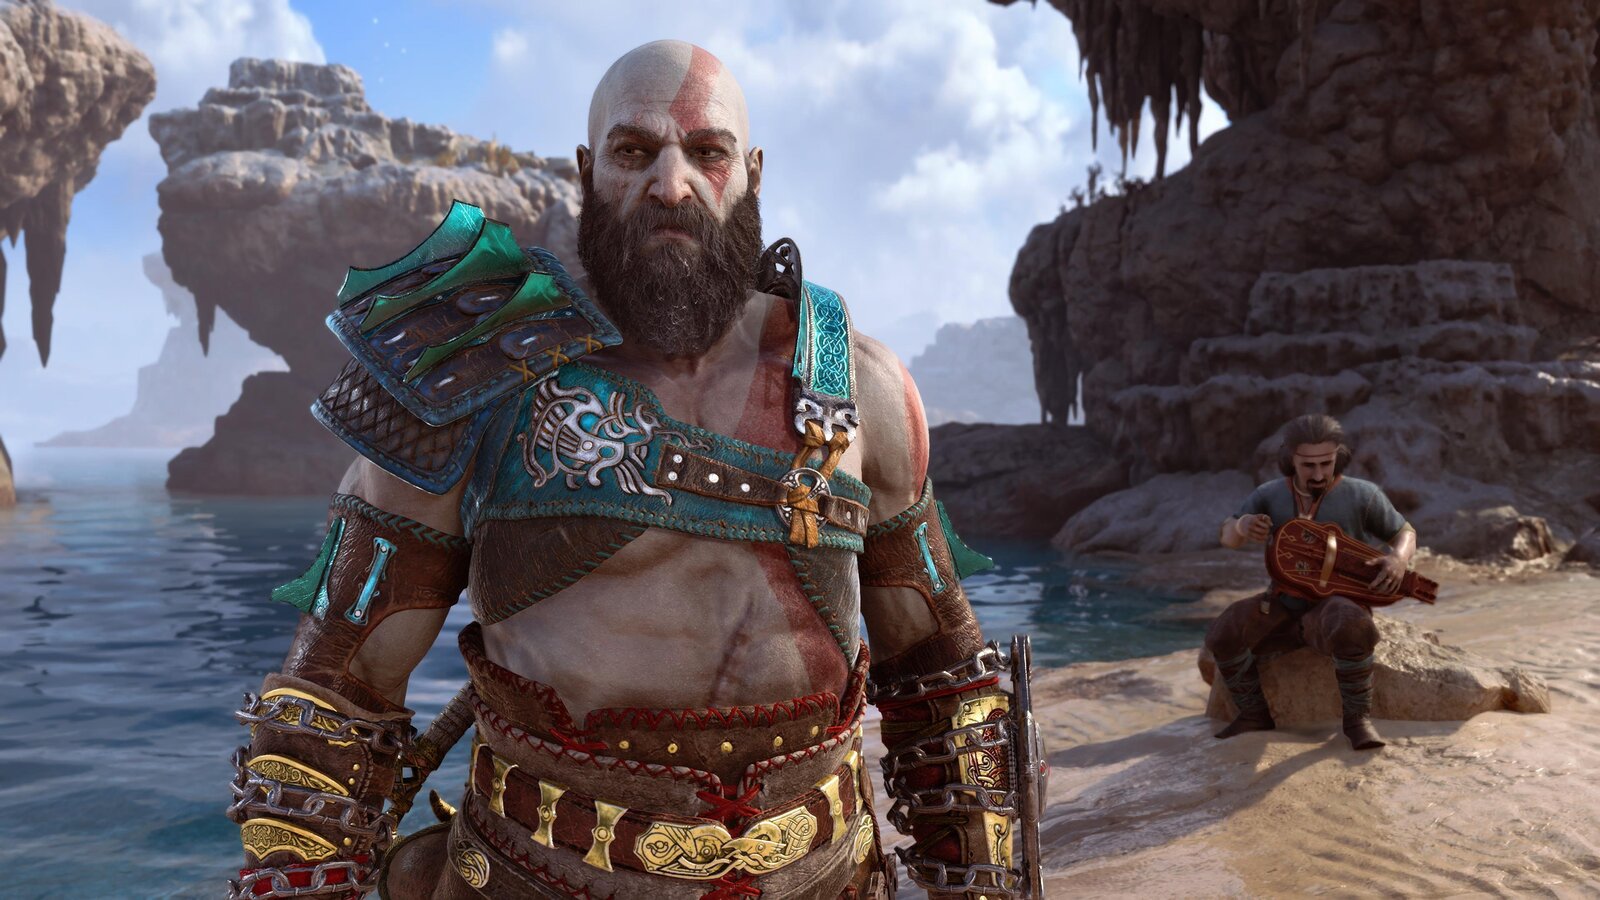 Kratos on a beach with dwarf playing a hurdy-gurdy behind him